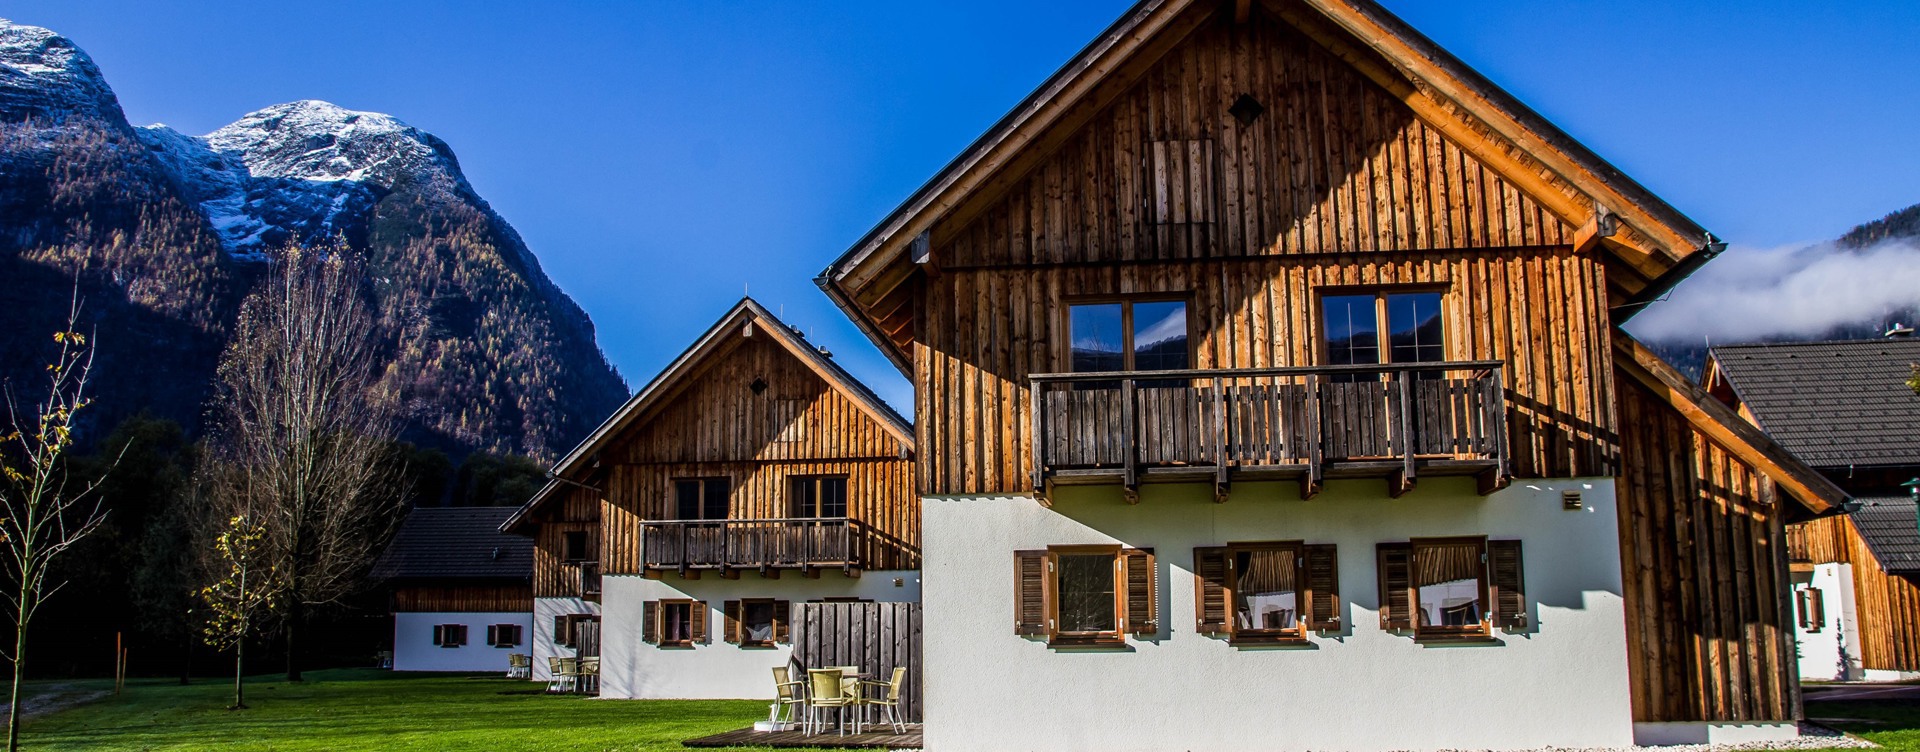 Geniet van een heerlijk verblijf op Dormio Resort Obertraun
in een prachtige omgeving